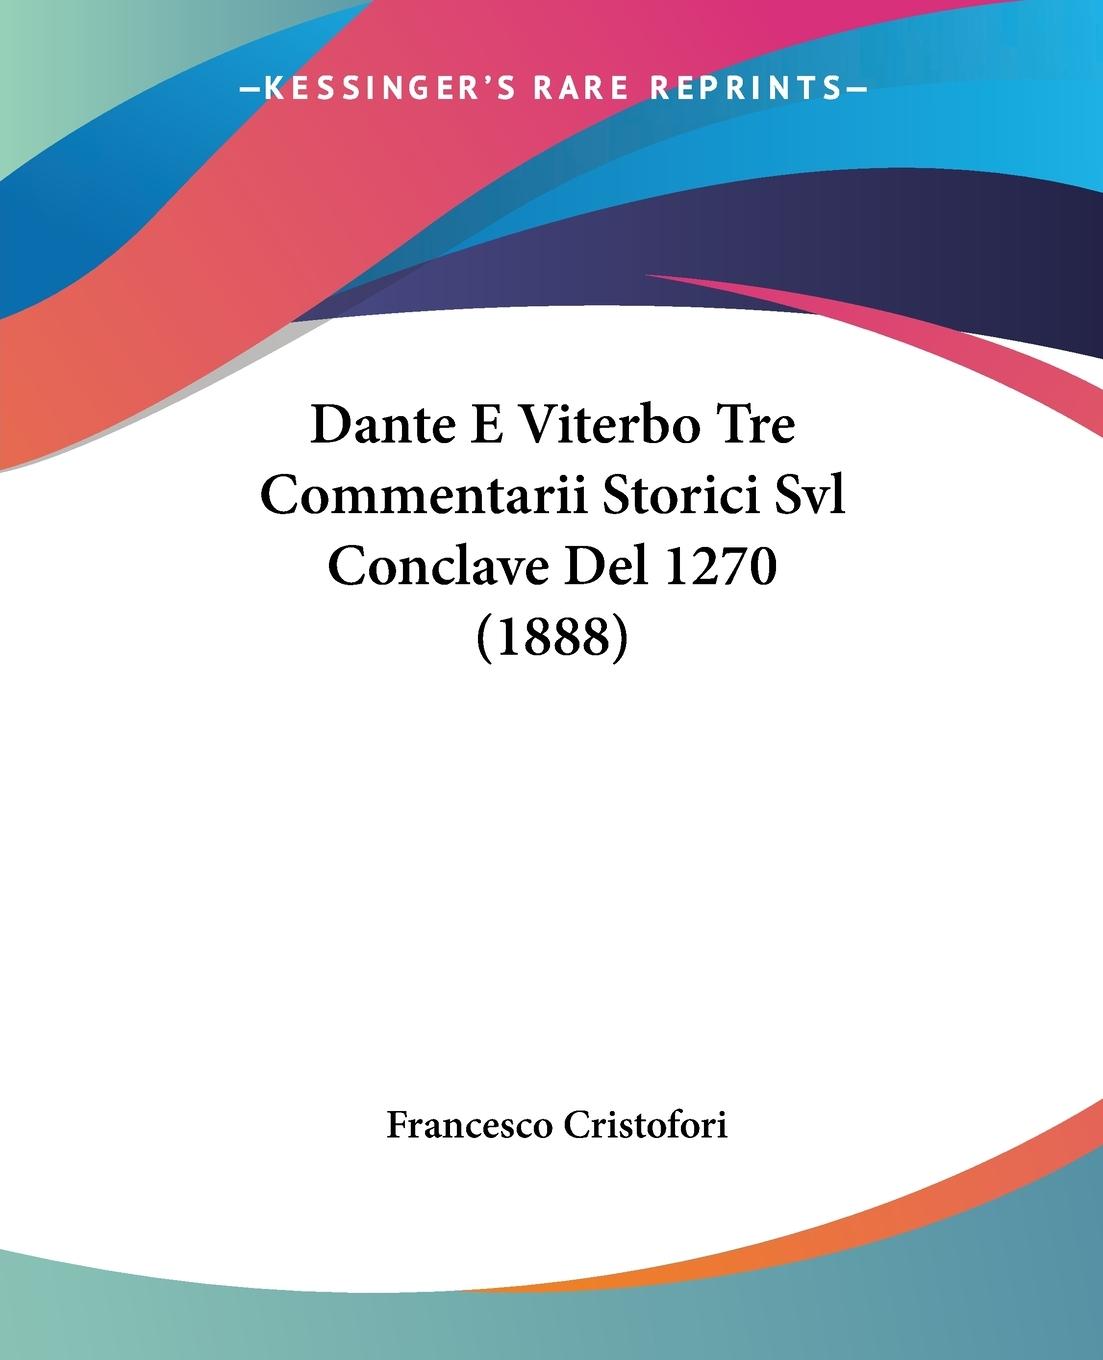 Dante E Viterbo Tre Commentarii Storici Svl Conclave Del 1270 (1888) - Cristofori, Francesco